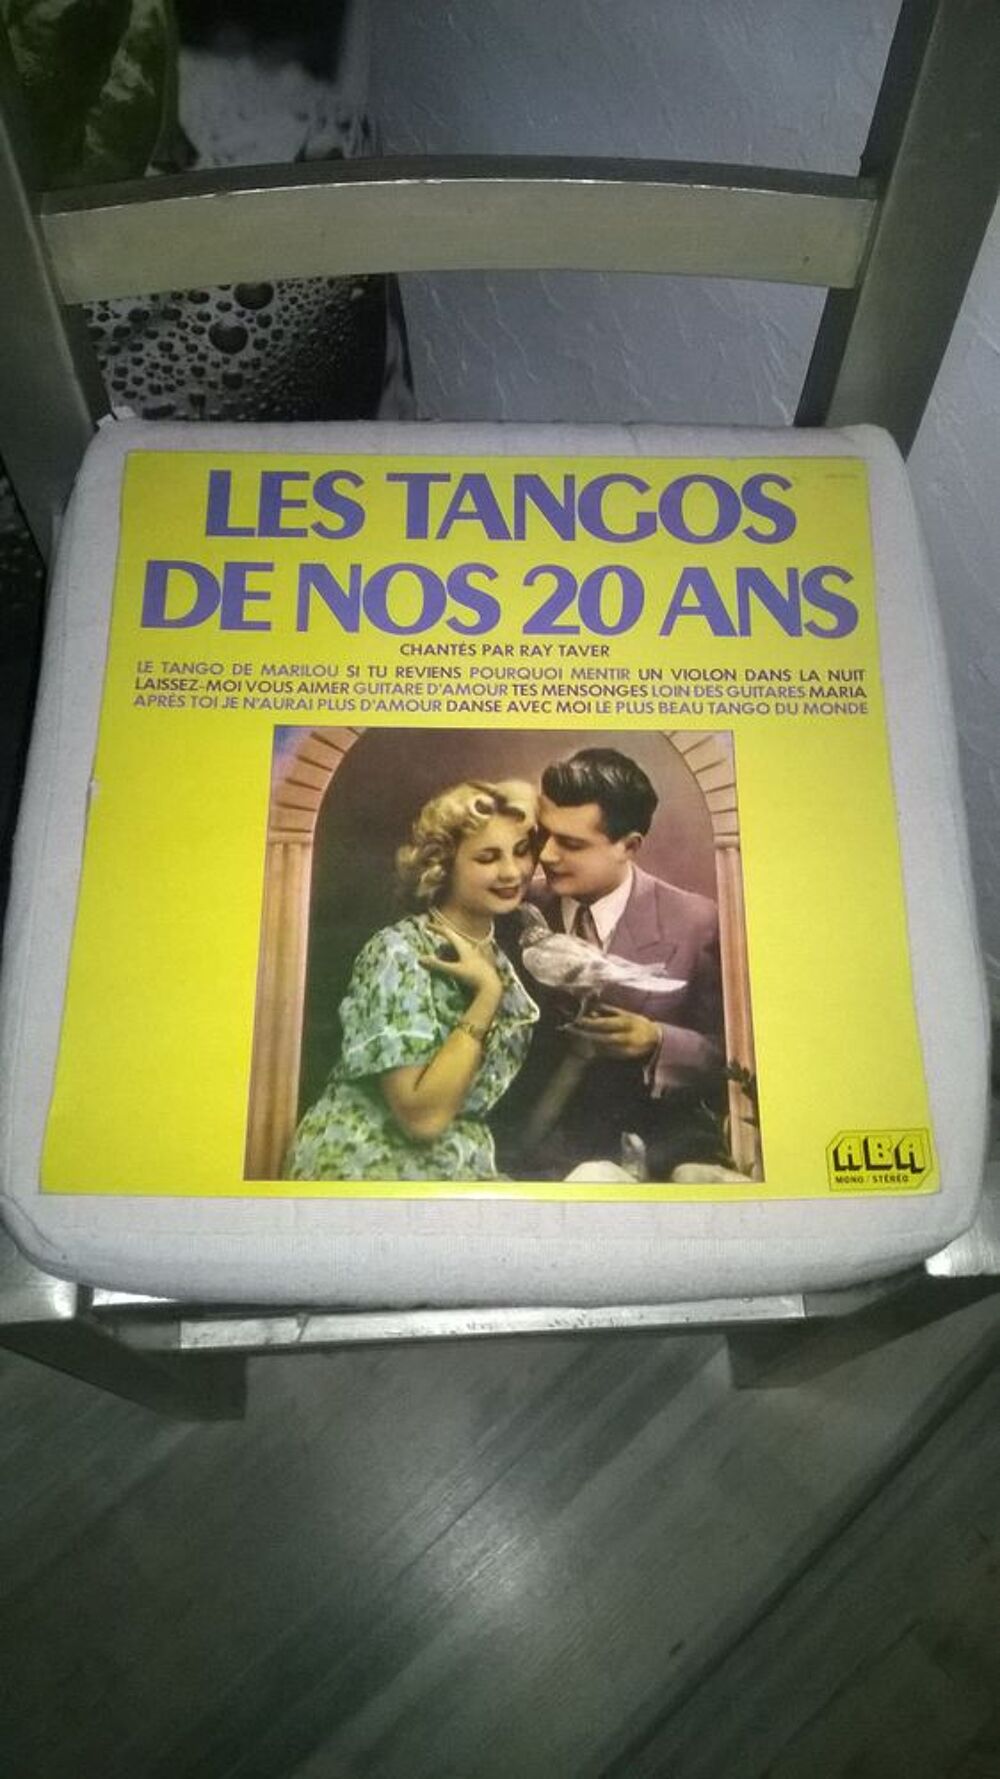 Vinyle Ray Taver
Les Tangos De Nos 20 Ans
1970
Excellent CD et vinyles